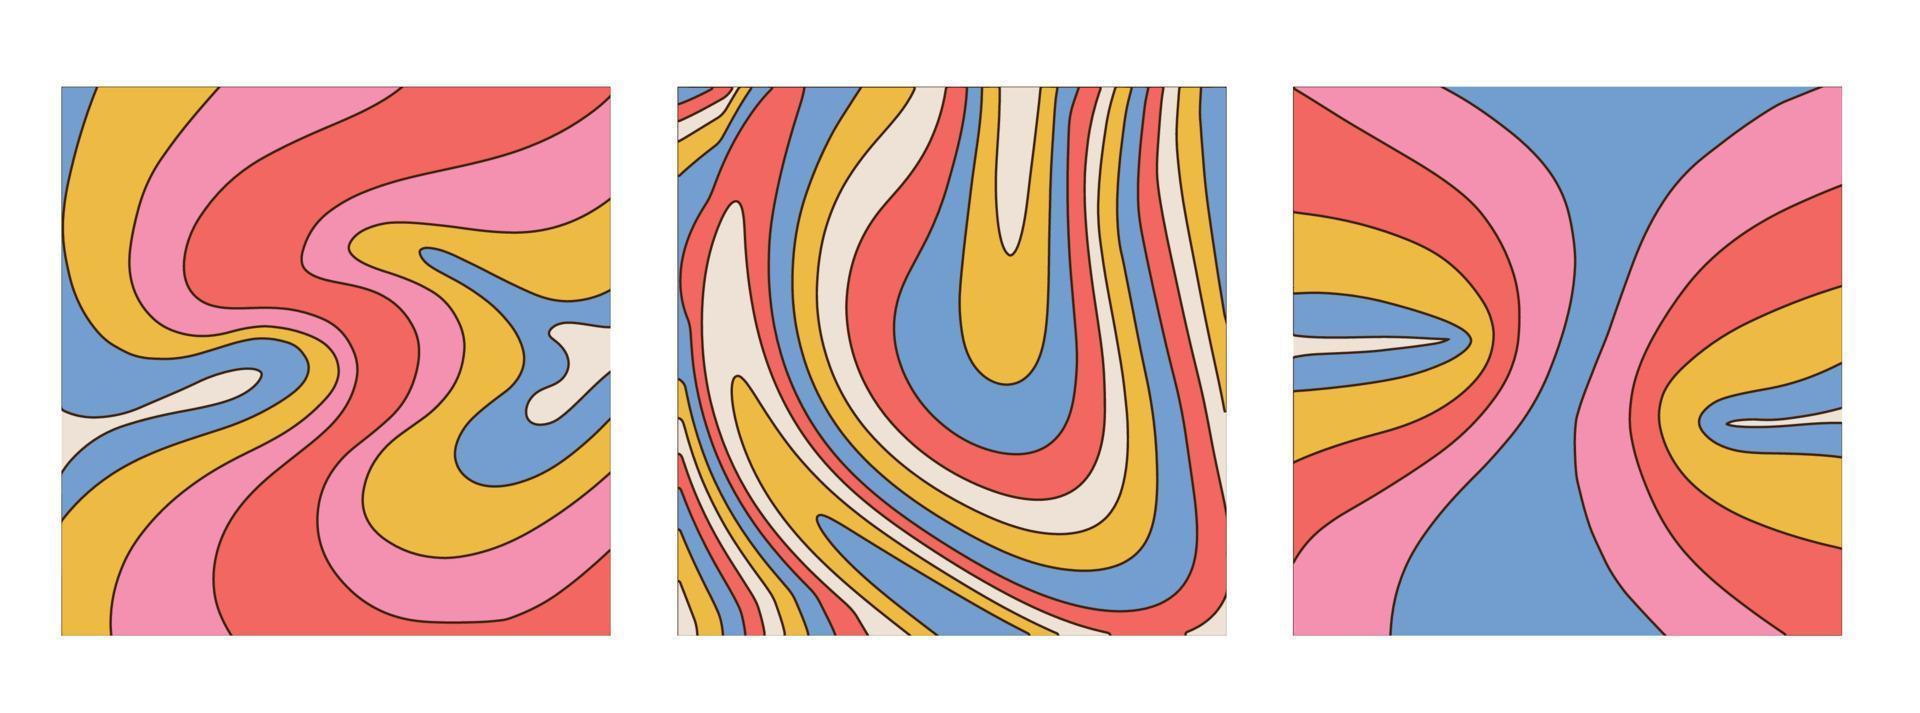 uppsättning träd groovy retro swirl burst bakgrunder. trippy retrobakgrund för psykedeliska 60- och 70-talsfester med smältande regnbågsfärger och groovy vågmönster i popkonststil. vektor dras illustration